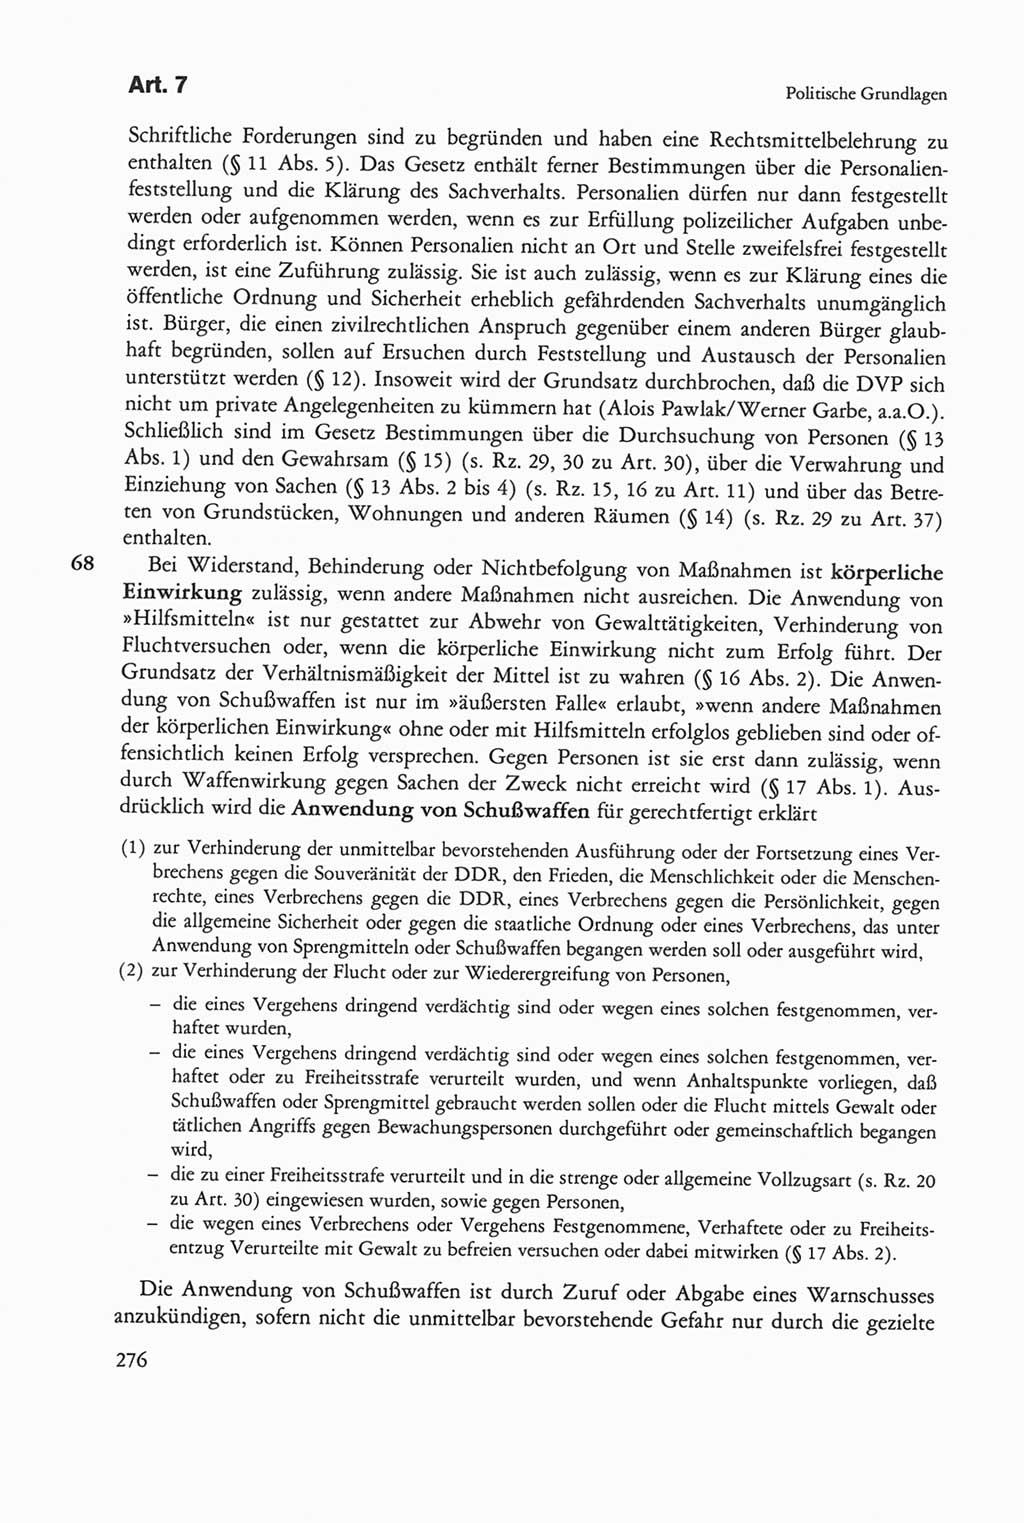 Die sozialistische Verfassung der Deutschen Demokratischen Republik (DDR), Kommentar mit einem Nachtrag 1997, Seite 276 (Soz. Verf. DDR Komm. Nachtr. 1997, S. 276)